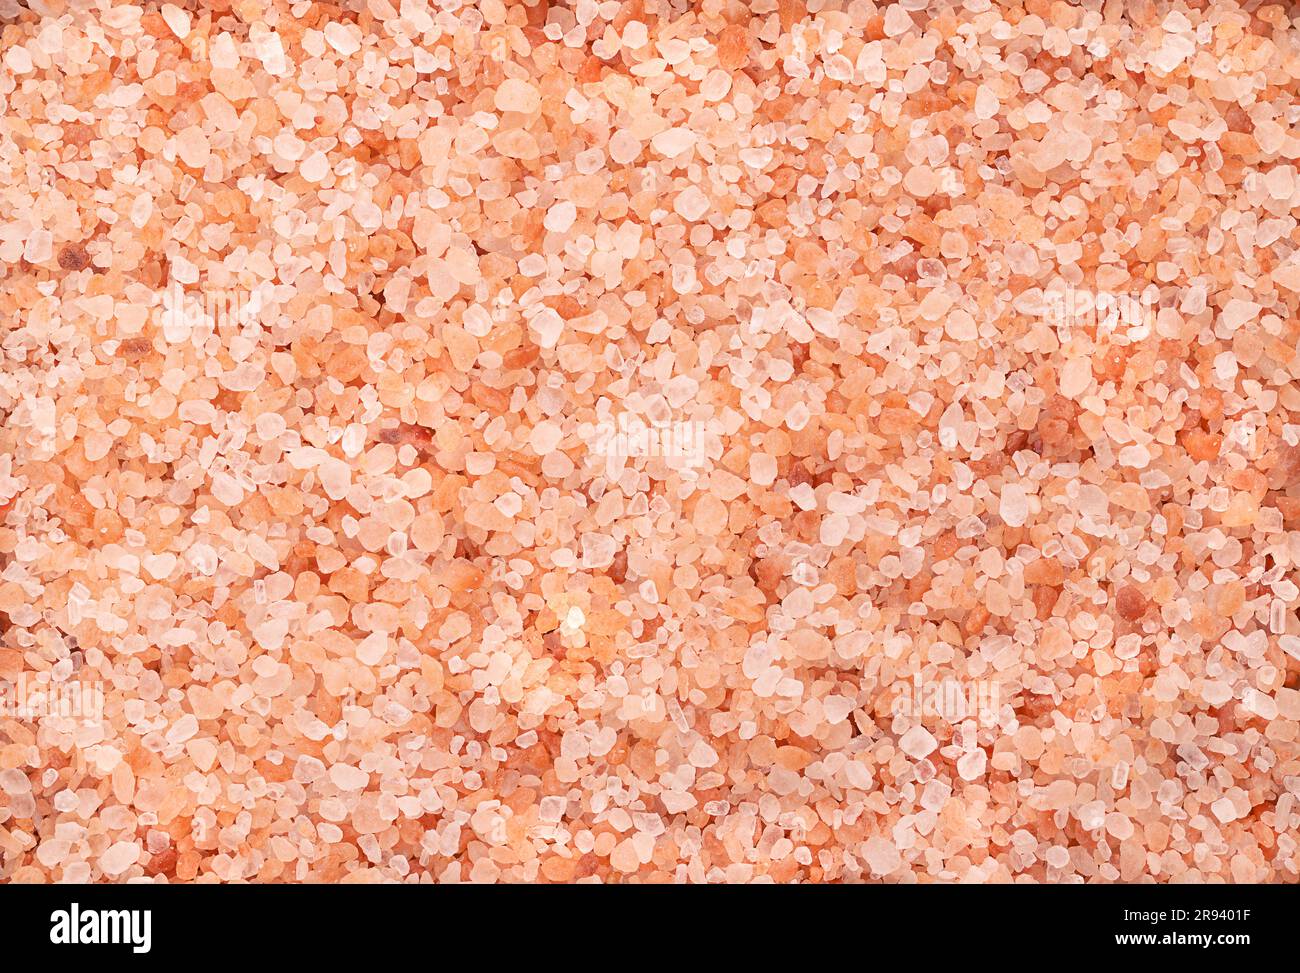 Himalaya-Salz, grobe Kristalle, von oben. Steinsalz, Halogensalz, rosafarben, aufgrund von Spurenmineralien, abgebaut aus der Region Punjab. Stockfoto